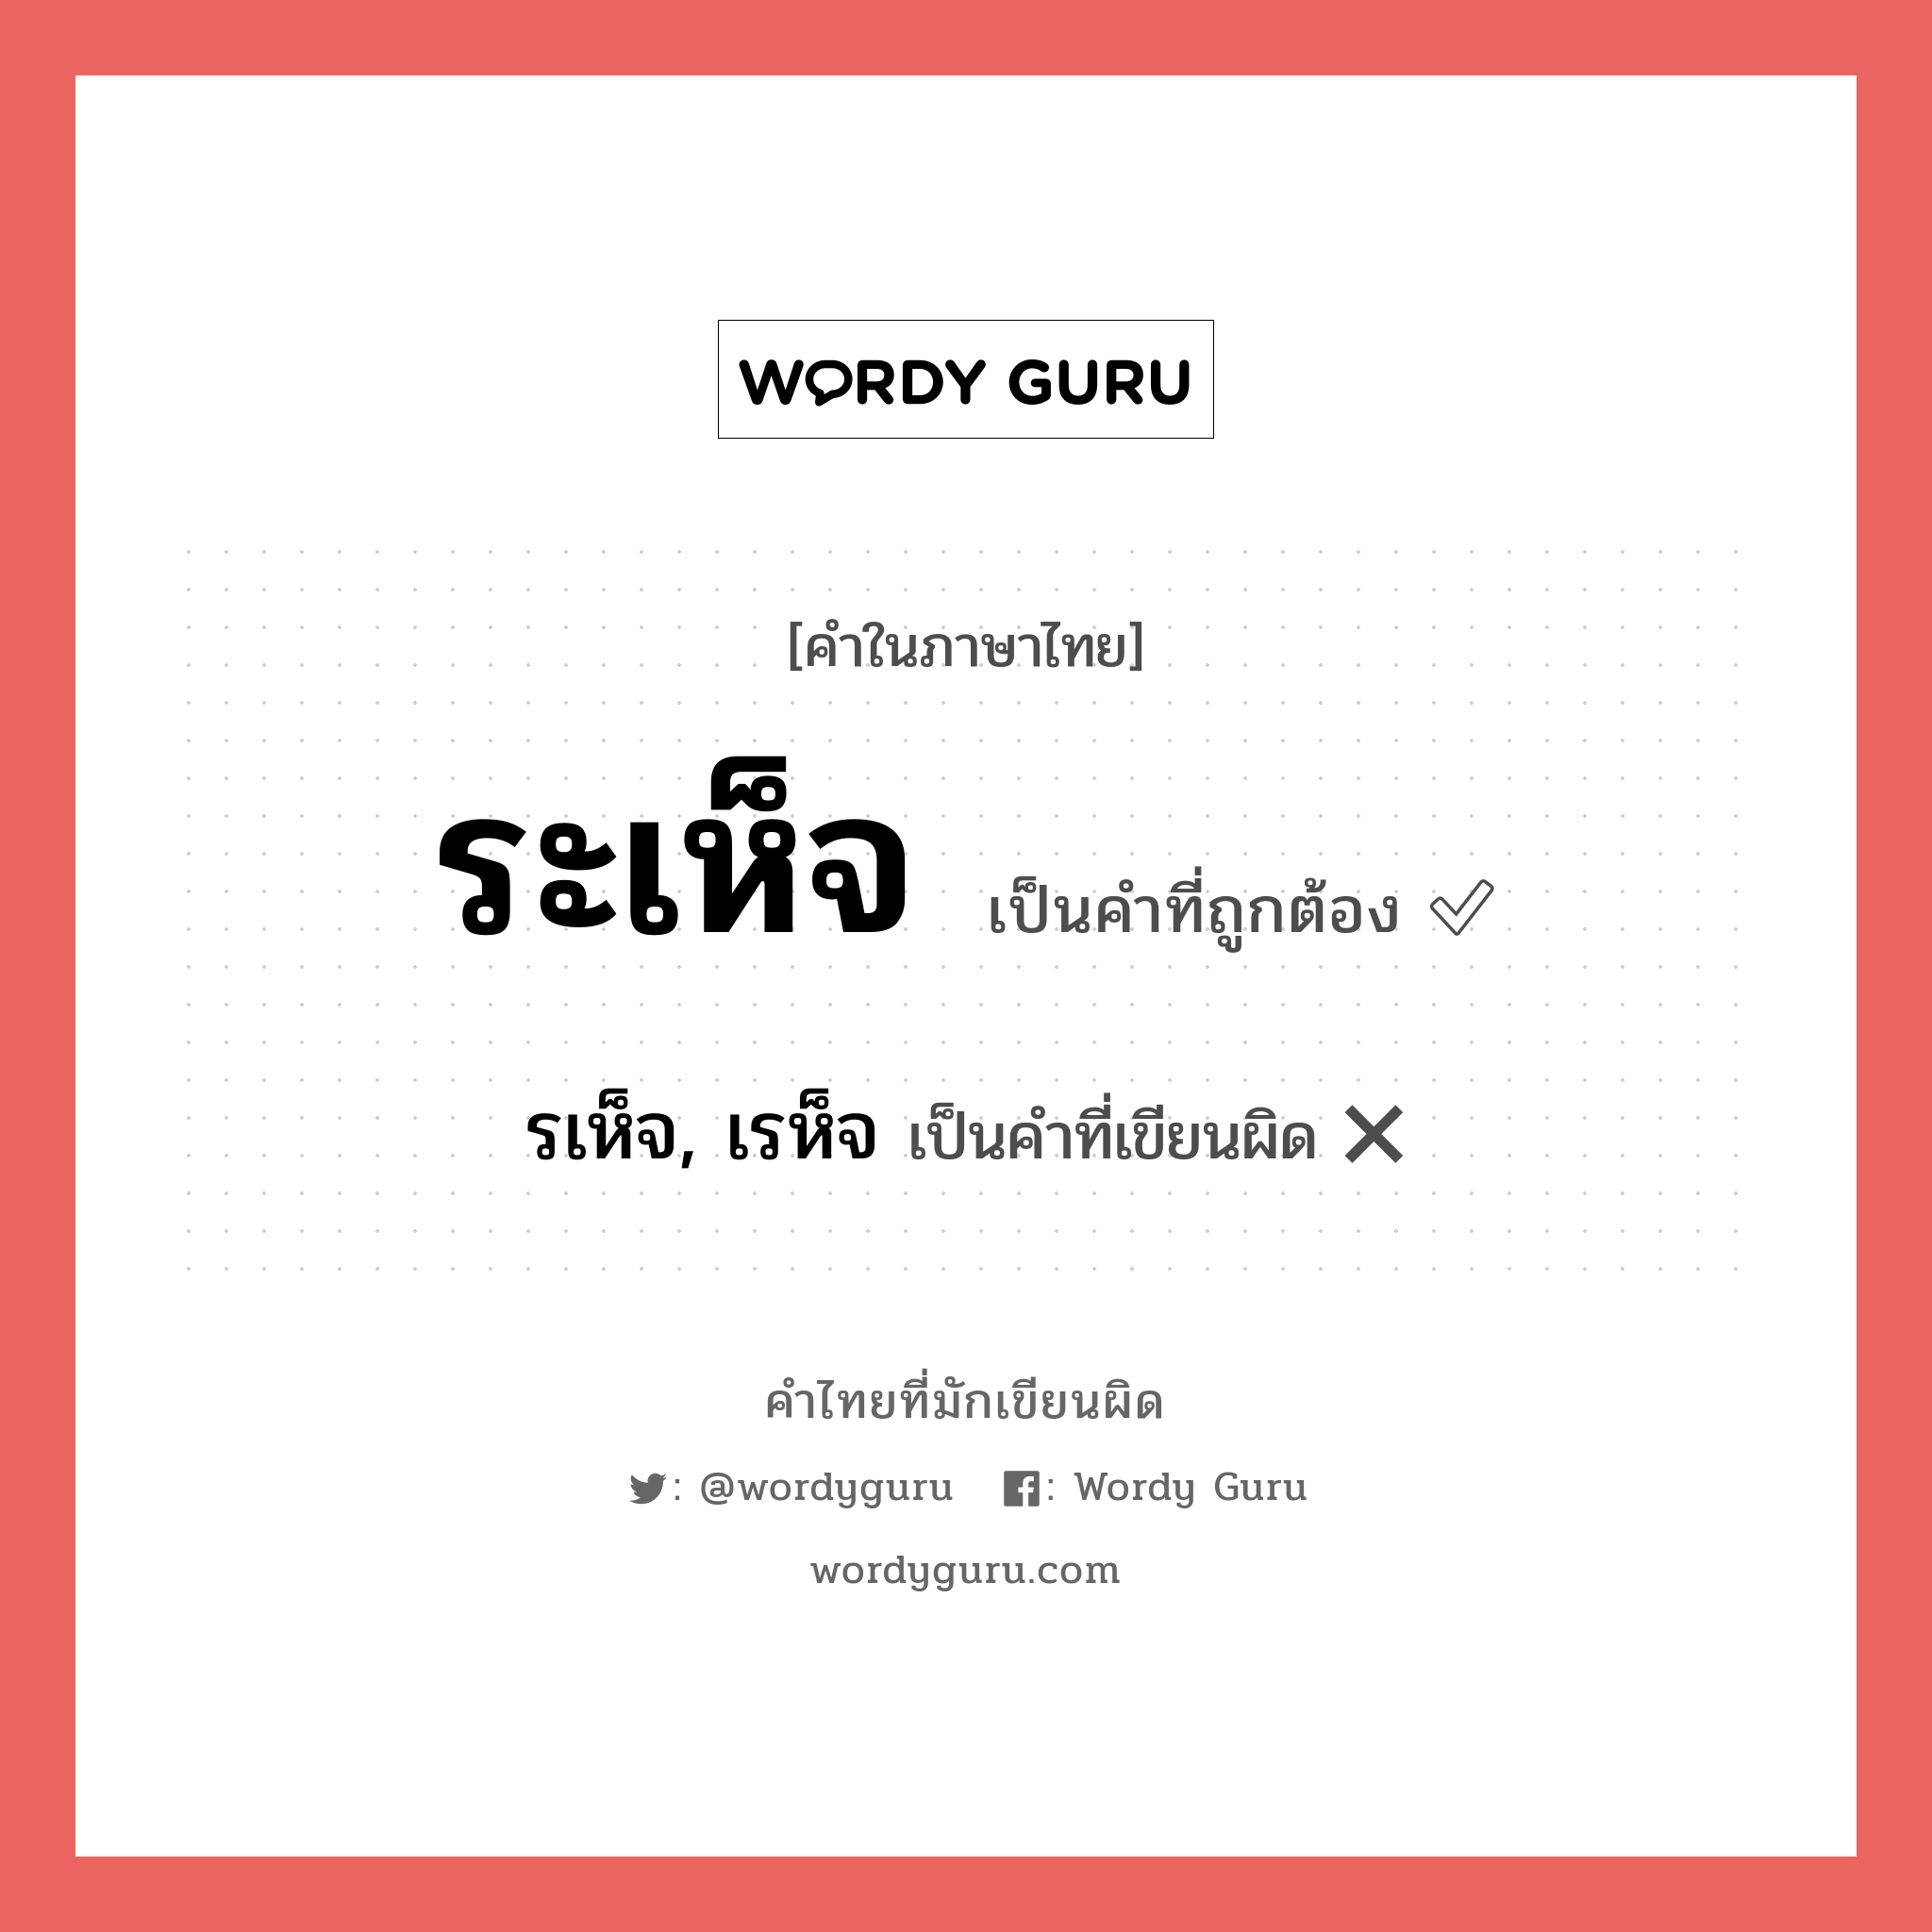 ระเห็จ หรือ รเห็จ, เรห็จ คำไหนเขียนถูก?, คำในภาษาไทยที่มักเขียนผิด ระเห็จ คำที่ผิด ❌ รเห็จ, เรห็จ